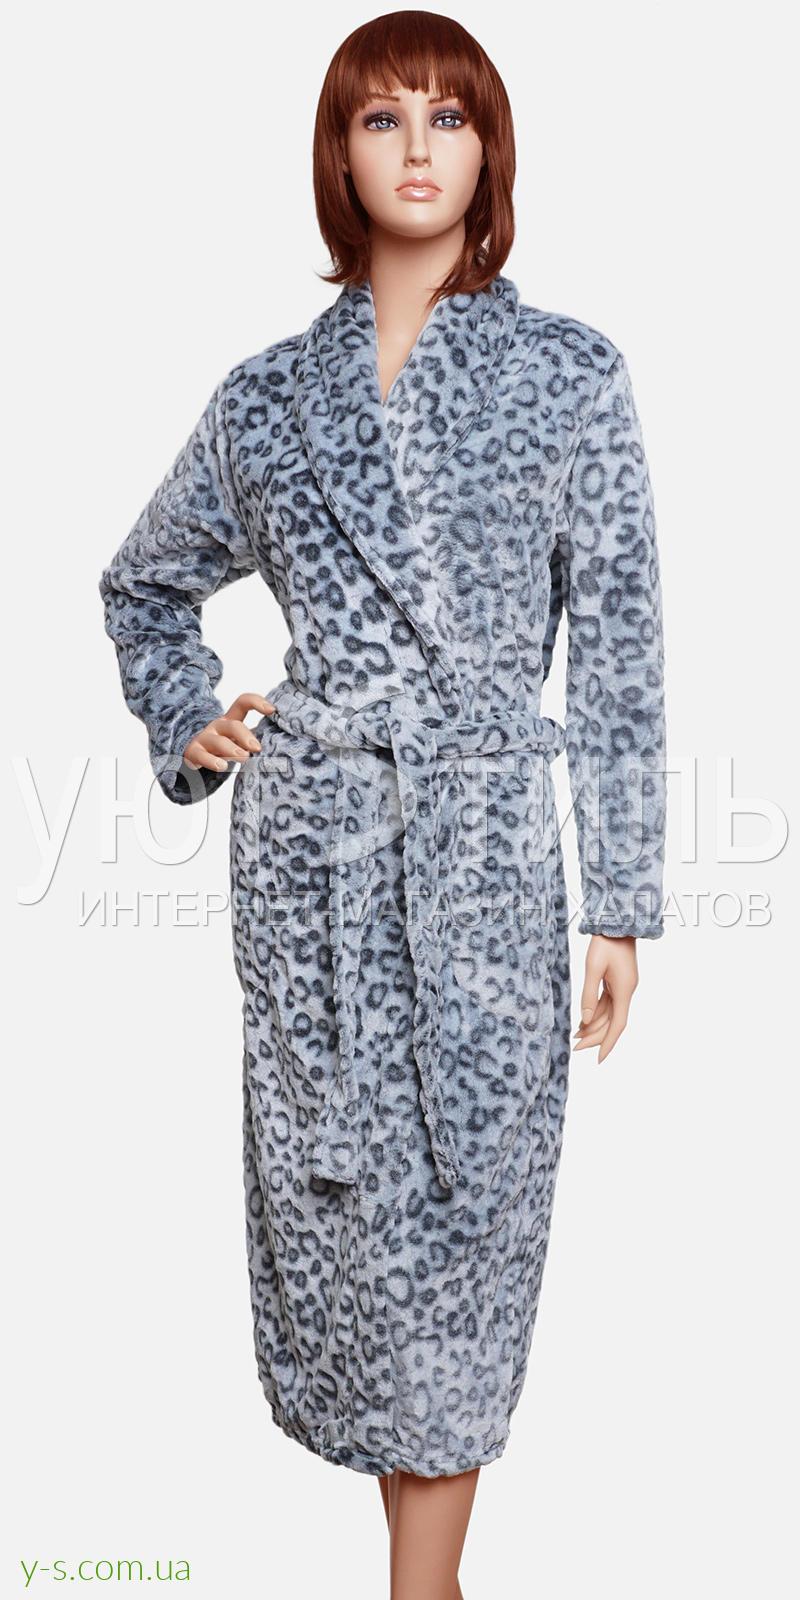 Мягкий женский халат леопардовой раскраски VA2143